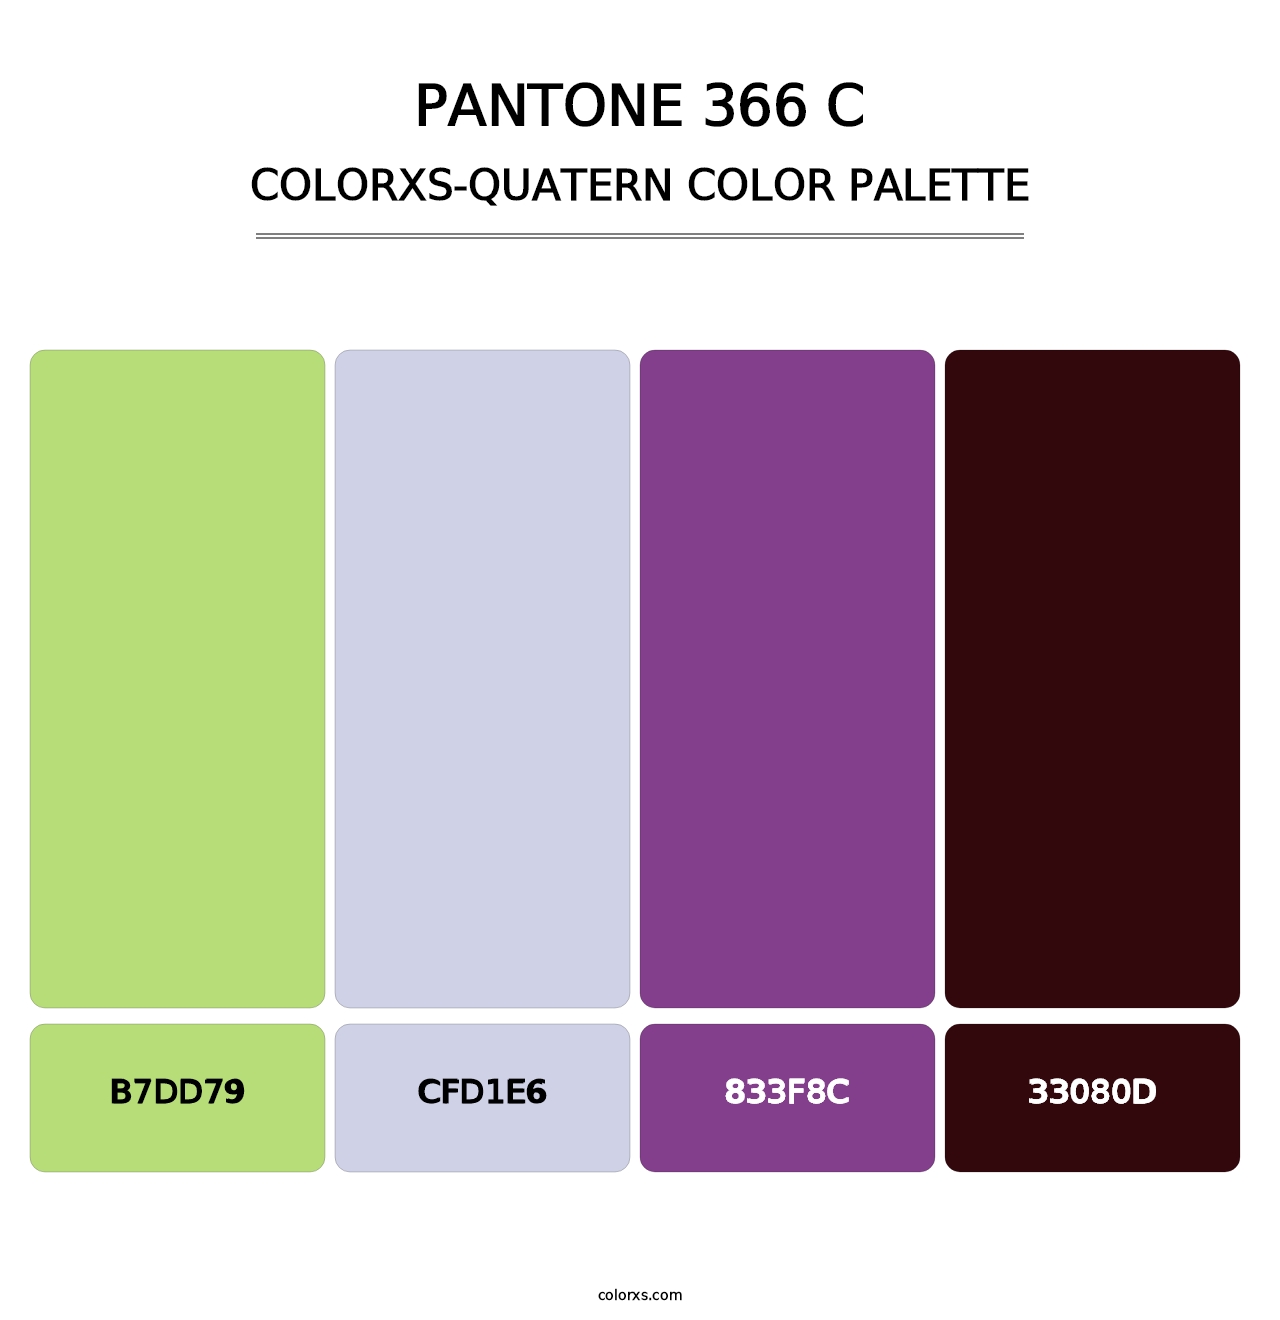 PANTONE 366 C - Colorxs Quatern Palette